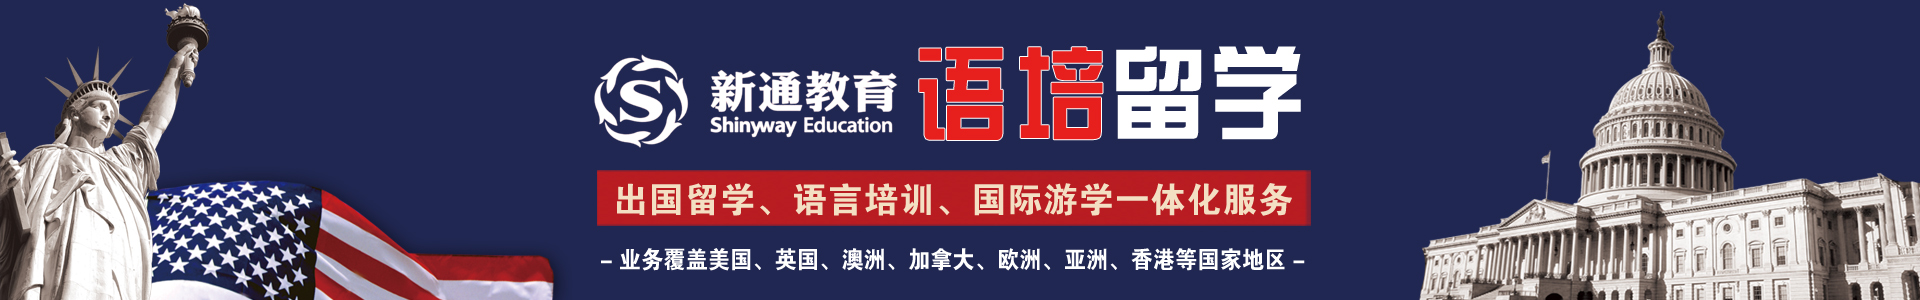 长沙新通教育机构